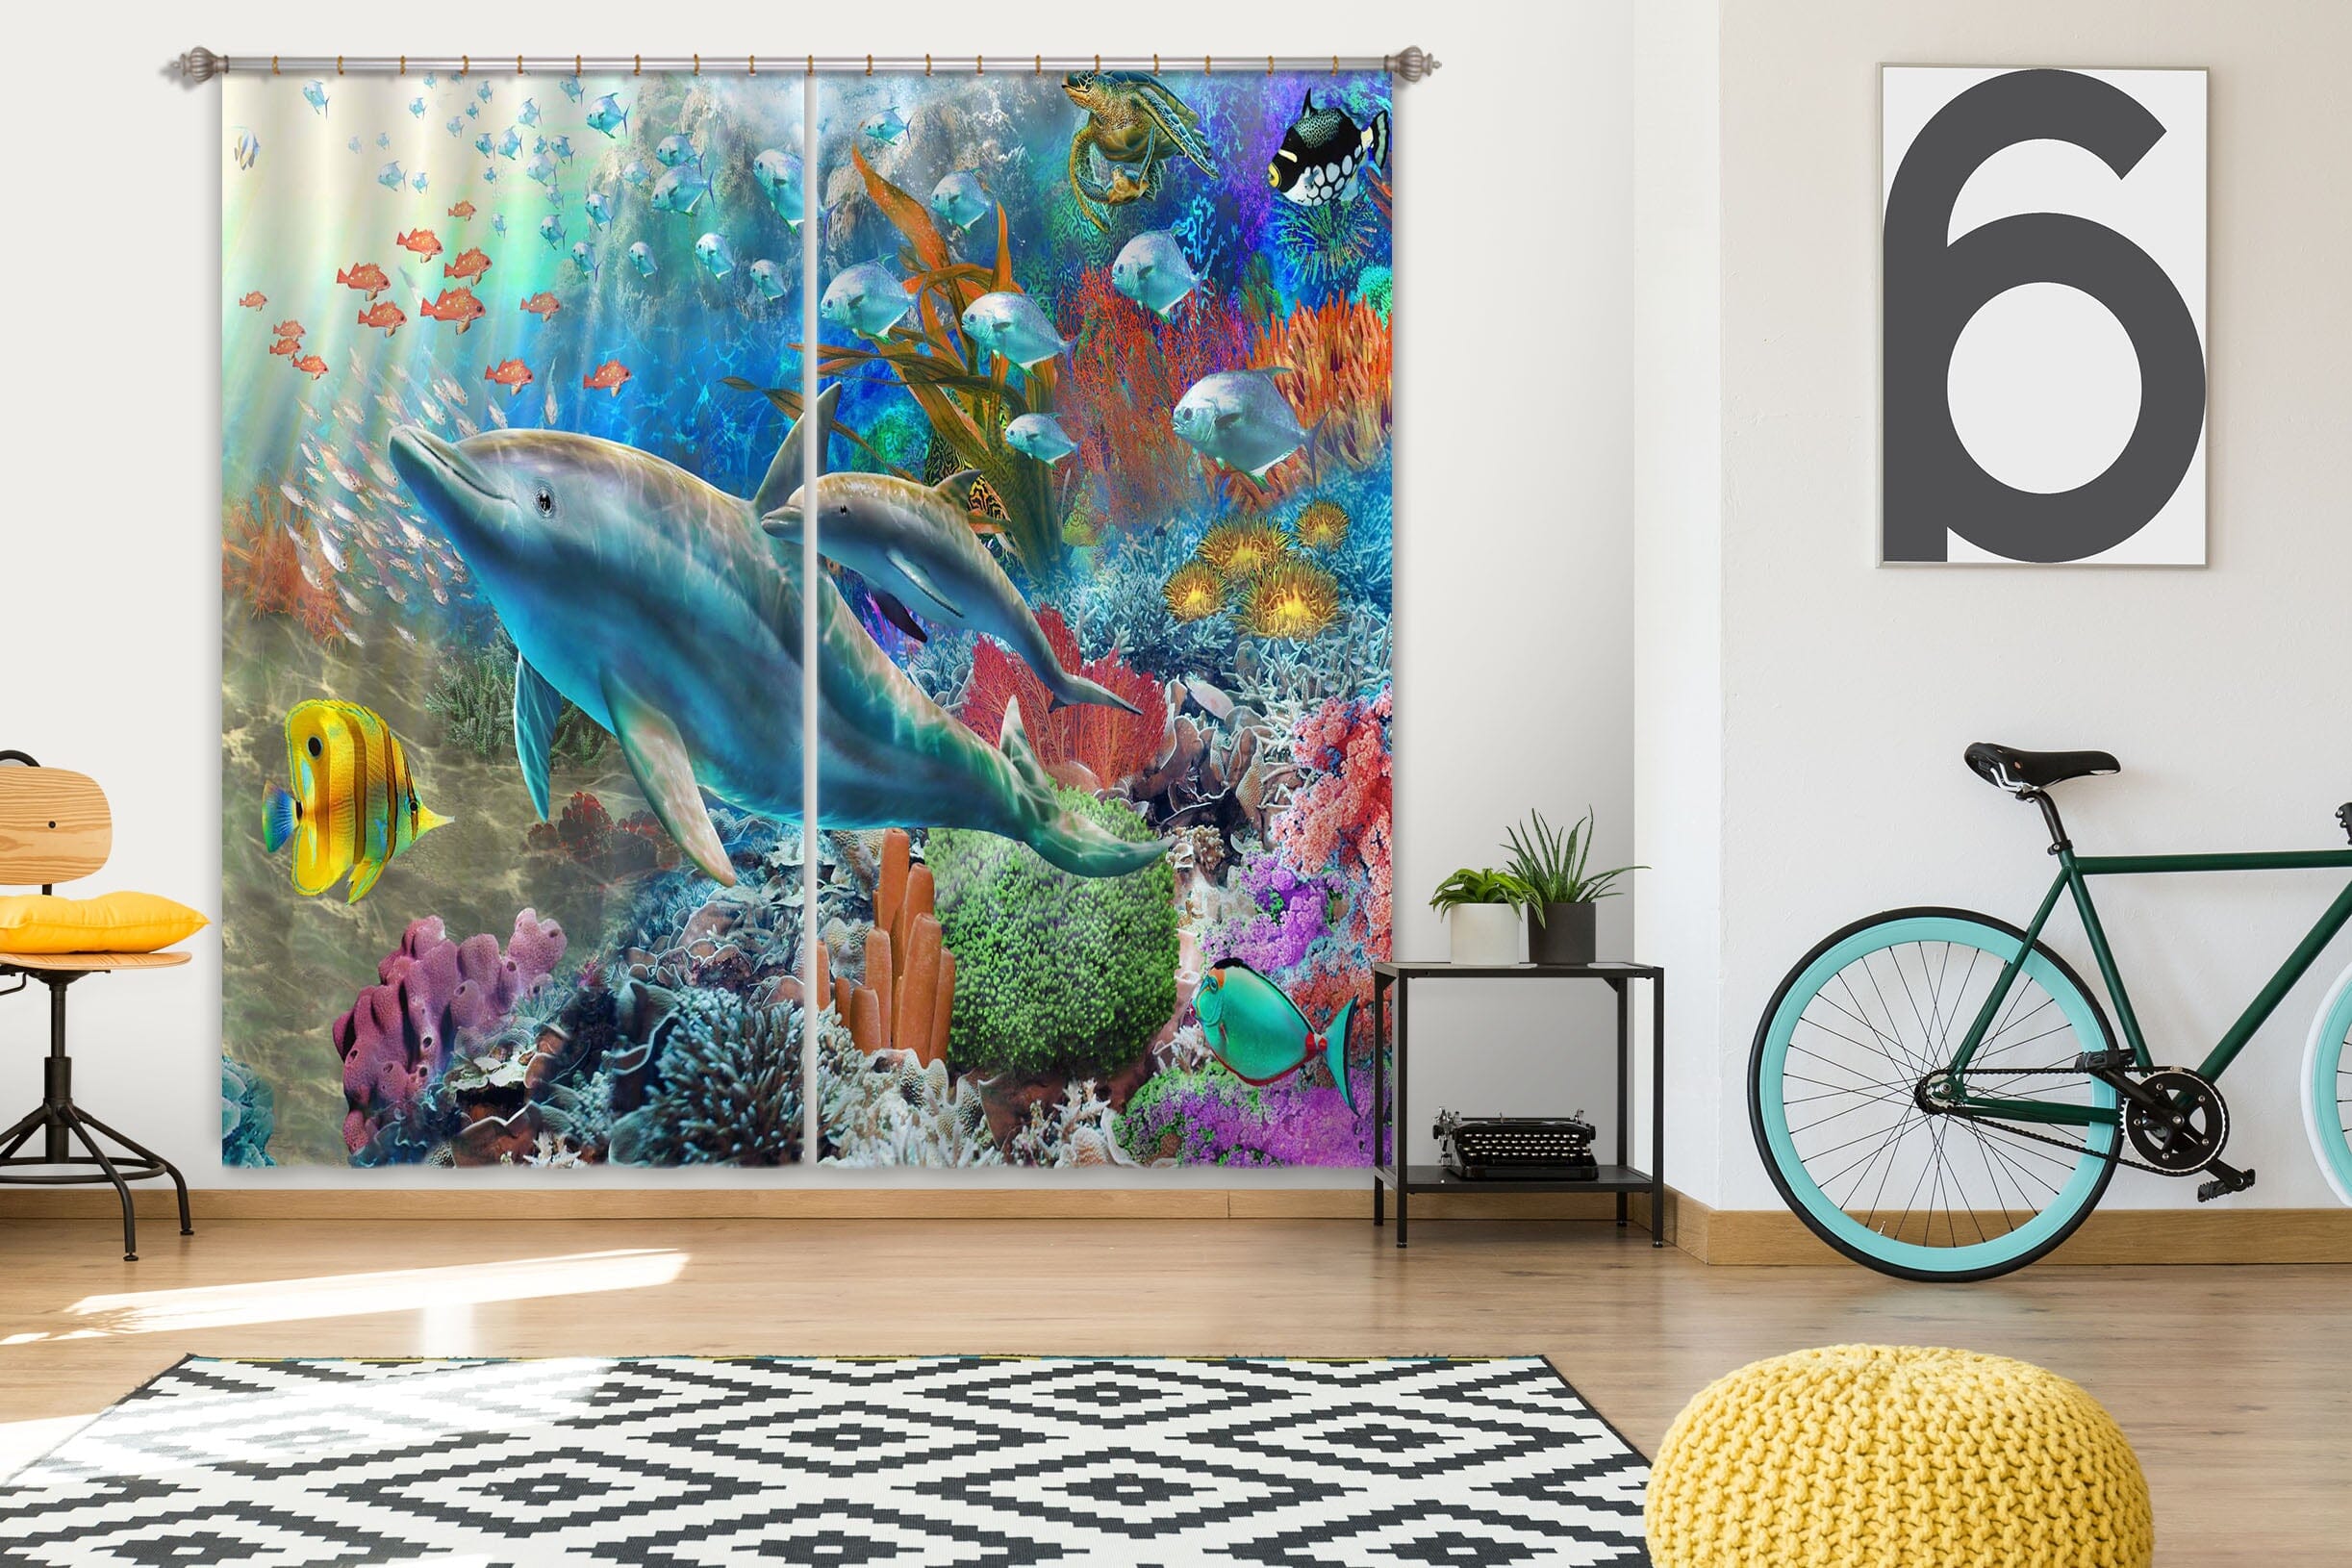 3D Colored Fish 052 Adrian Chesterman Curtain Curtains Drapes Curtains AJ Creativity Home 